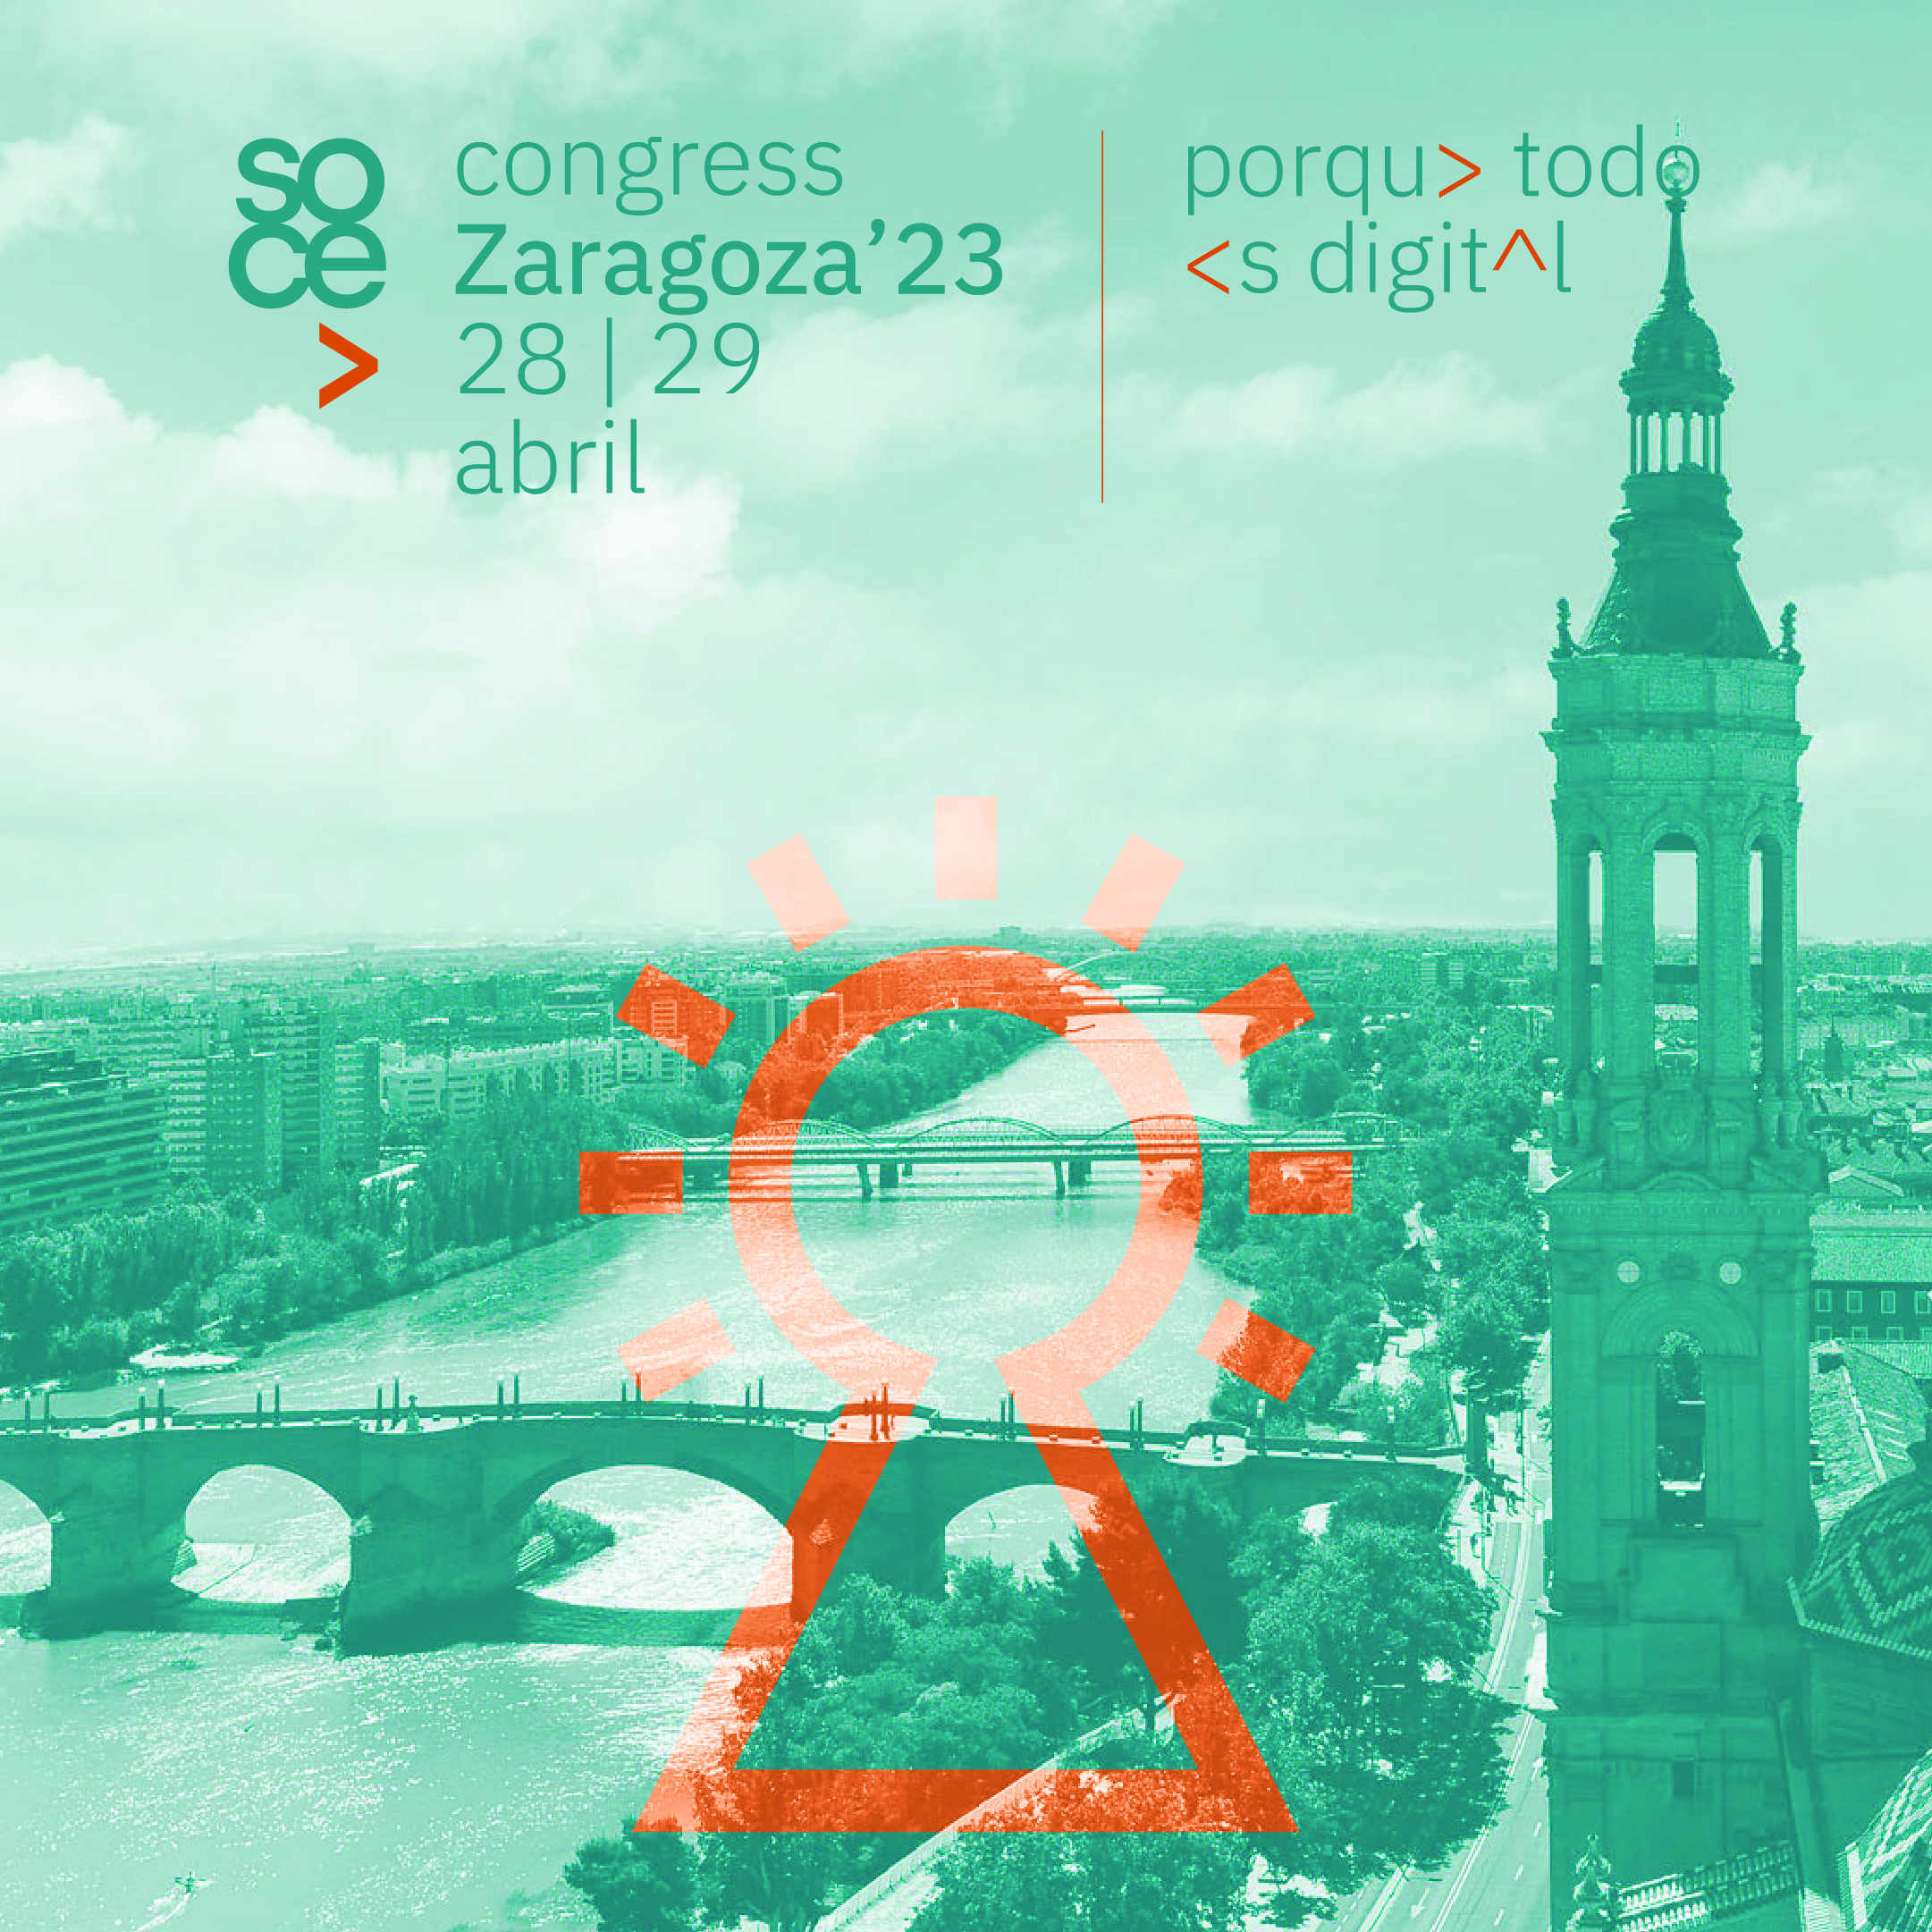 Congreso SOCE Zaragoza 2023